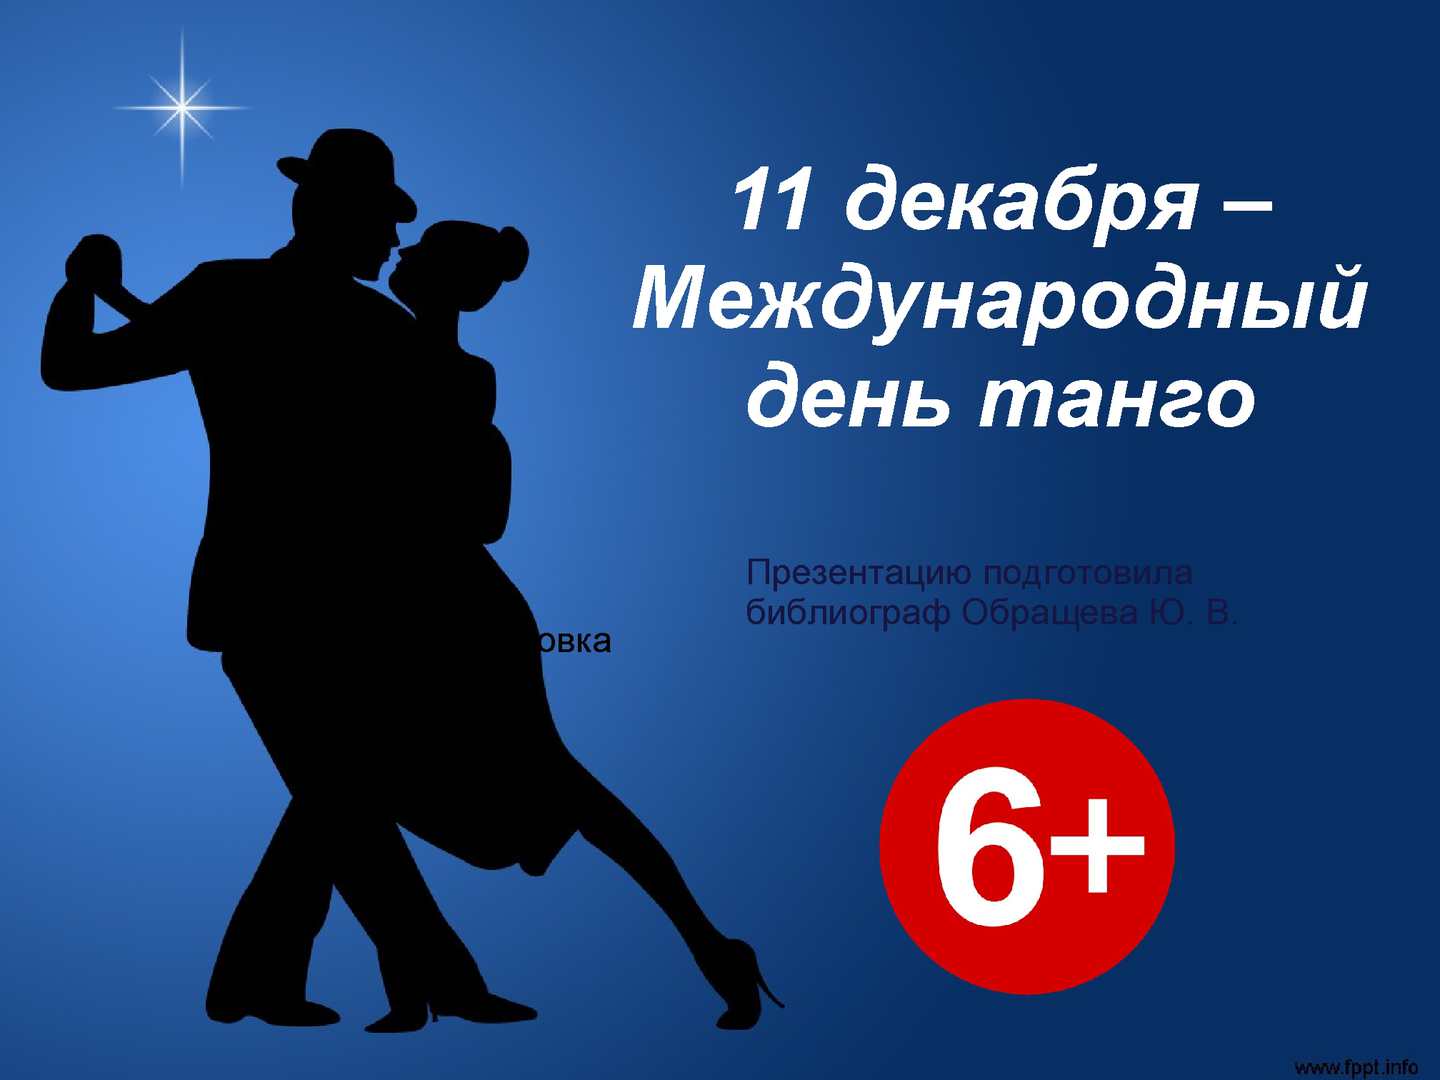 Международный день танго отмечают 11 декабря: картинки, анимация, поздравления с праздником